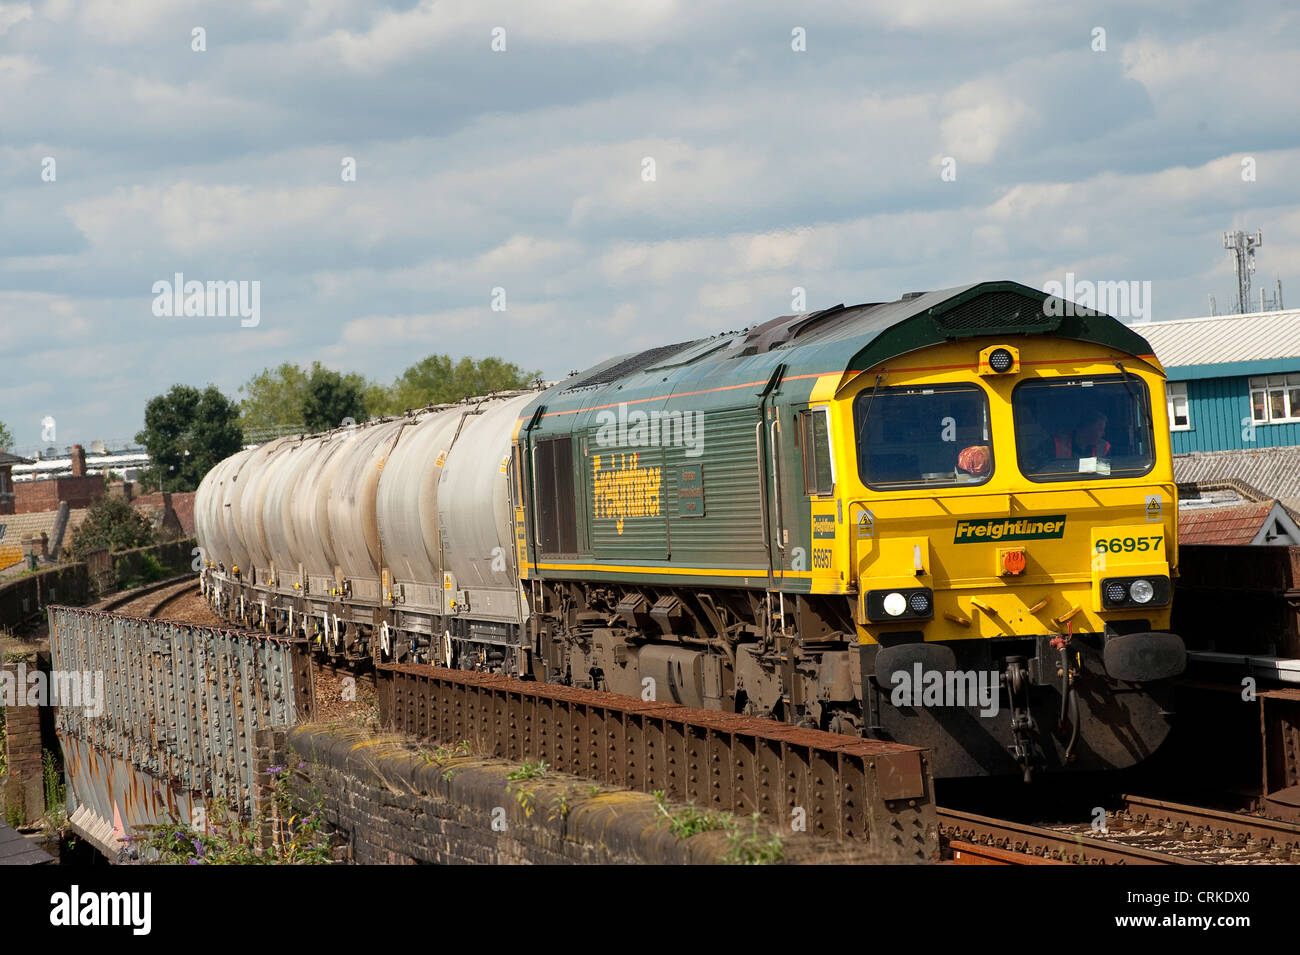 Freightliner Lokomotive schleppen Container entlang einer Eisenbahnstrecke in England. Stockfoto